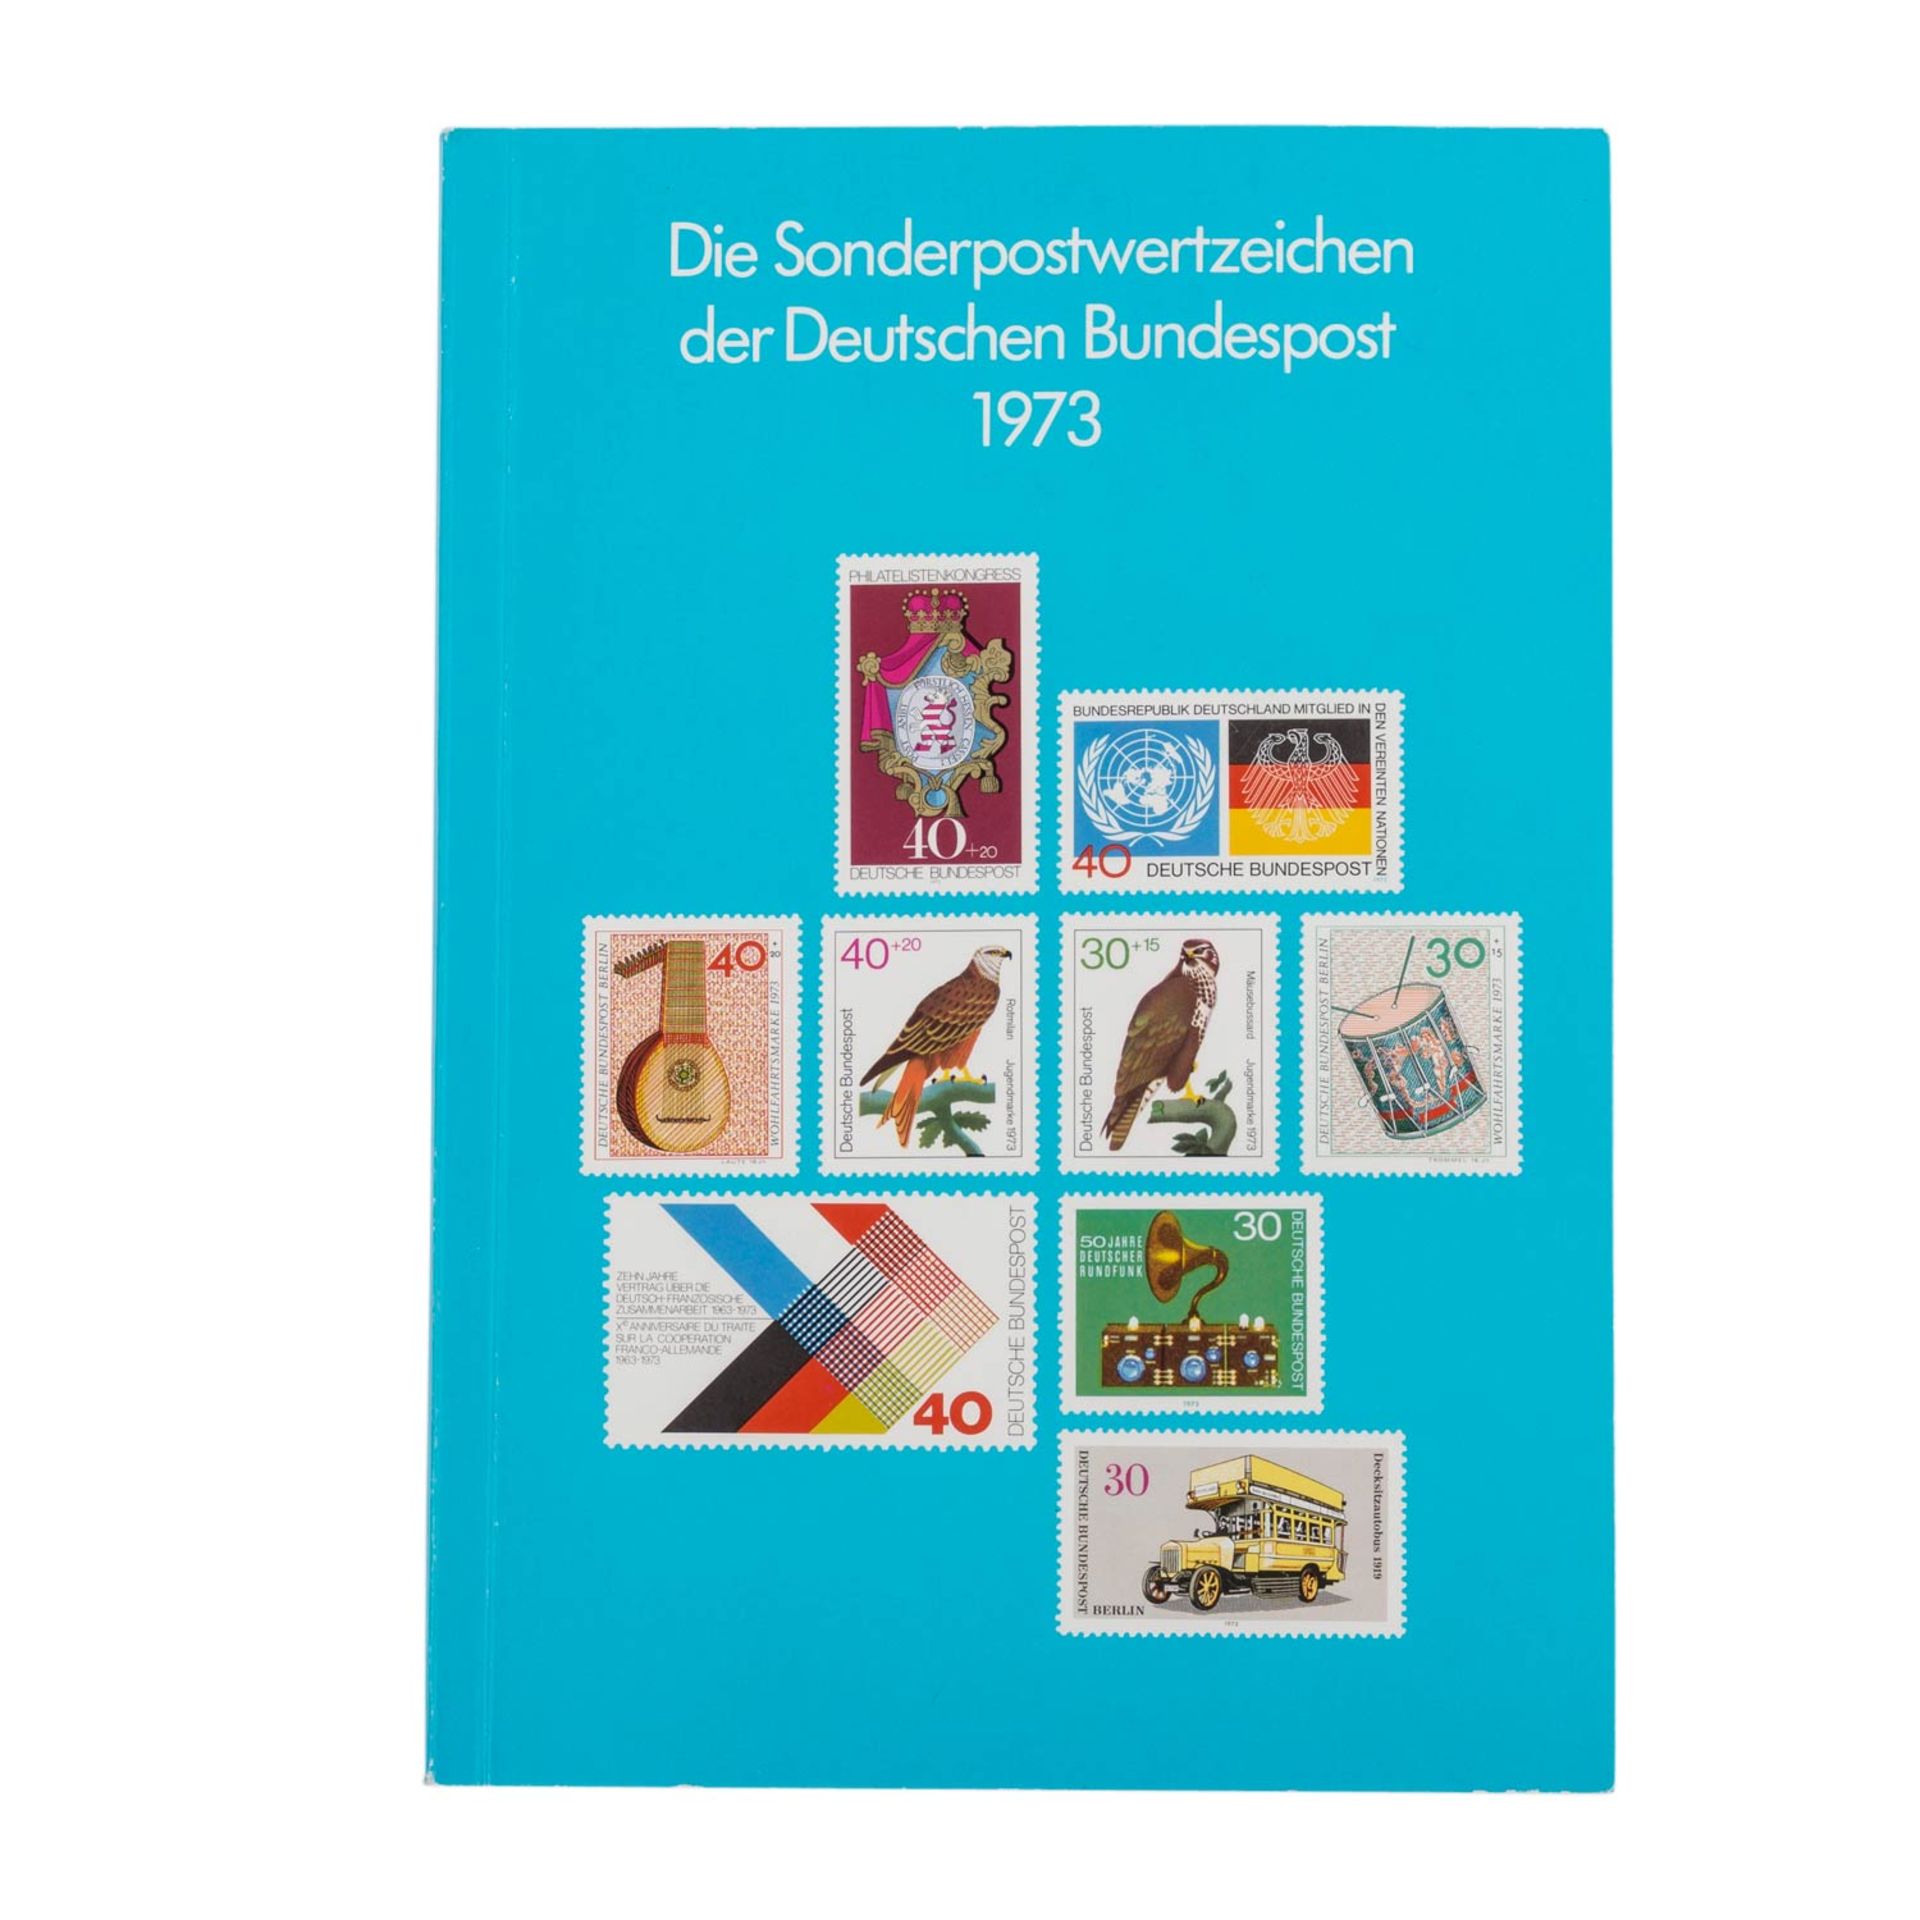 Jahrbuch 1973 - Das erste der BRD!Gesucht und selten, mit Inhalt! Minimale Gebrauchsspuren.Book year